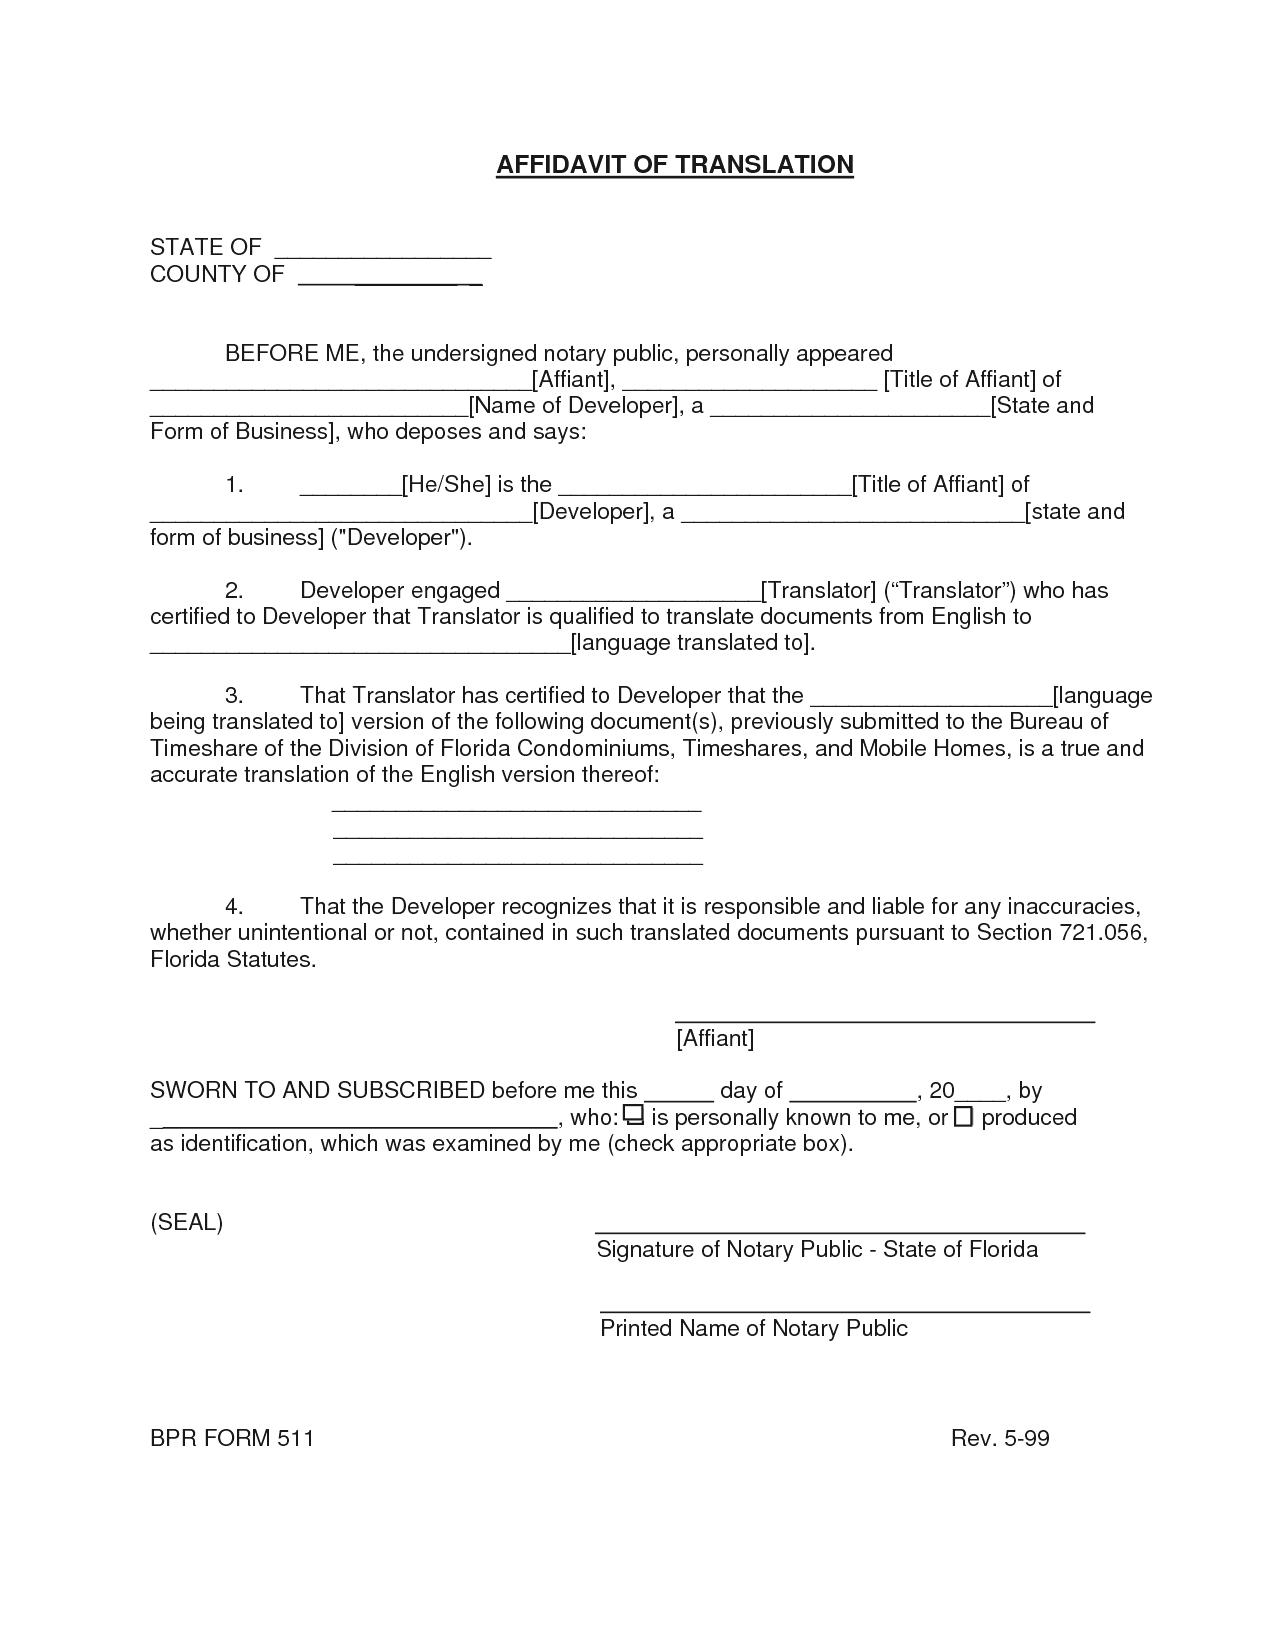 death-certificate-translation-template